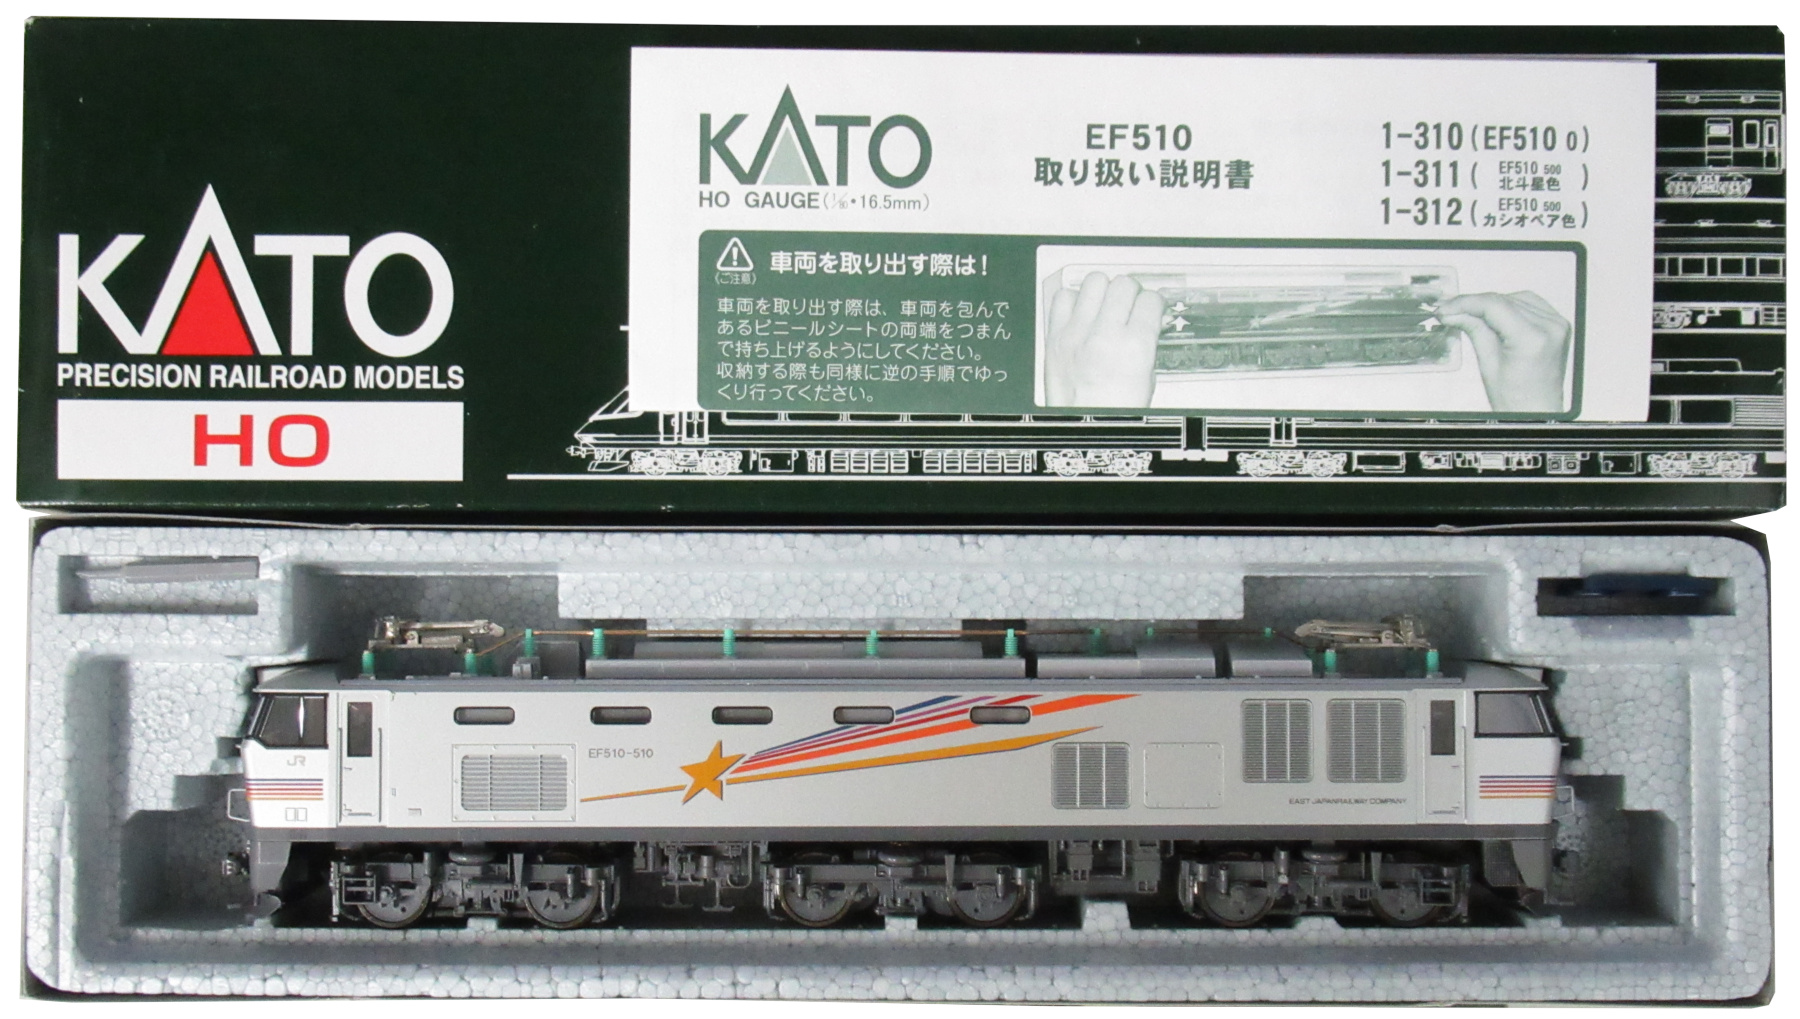 KATO 1-312 EF510 500 カシオペア色 送料無料お手入れ要らず - 鉄道模型